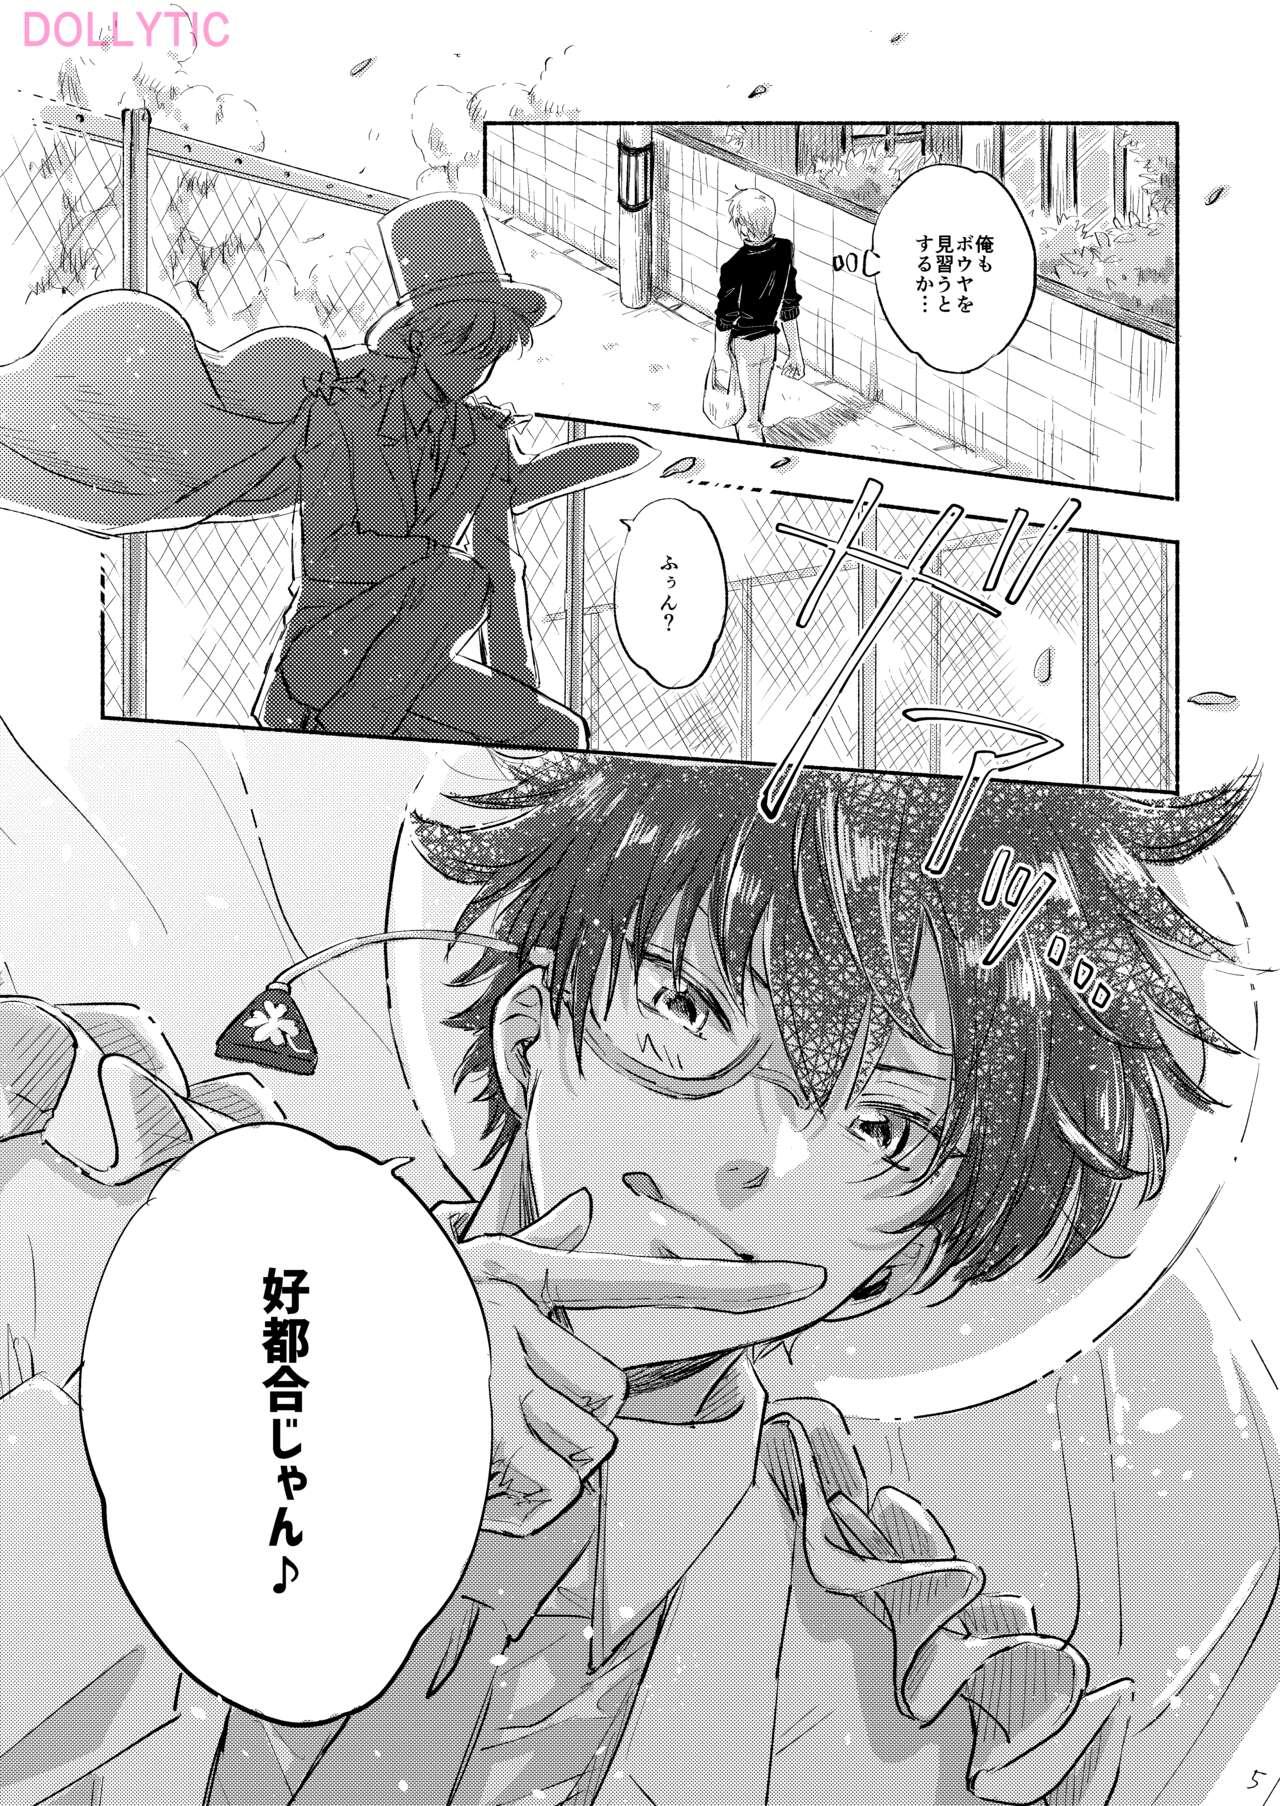 Gostoso Usotsuki Mode - Liar mode - Detective conan | meitantei conan Gay Blowjob - Page 4